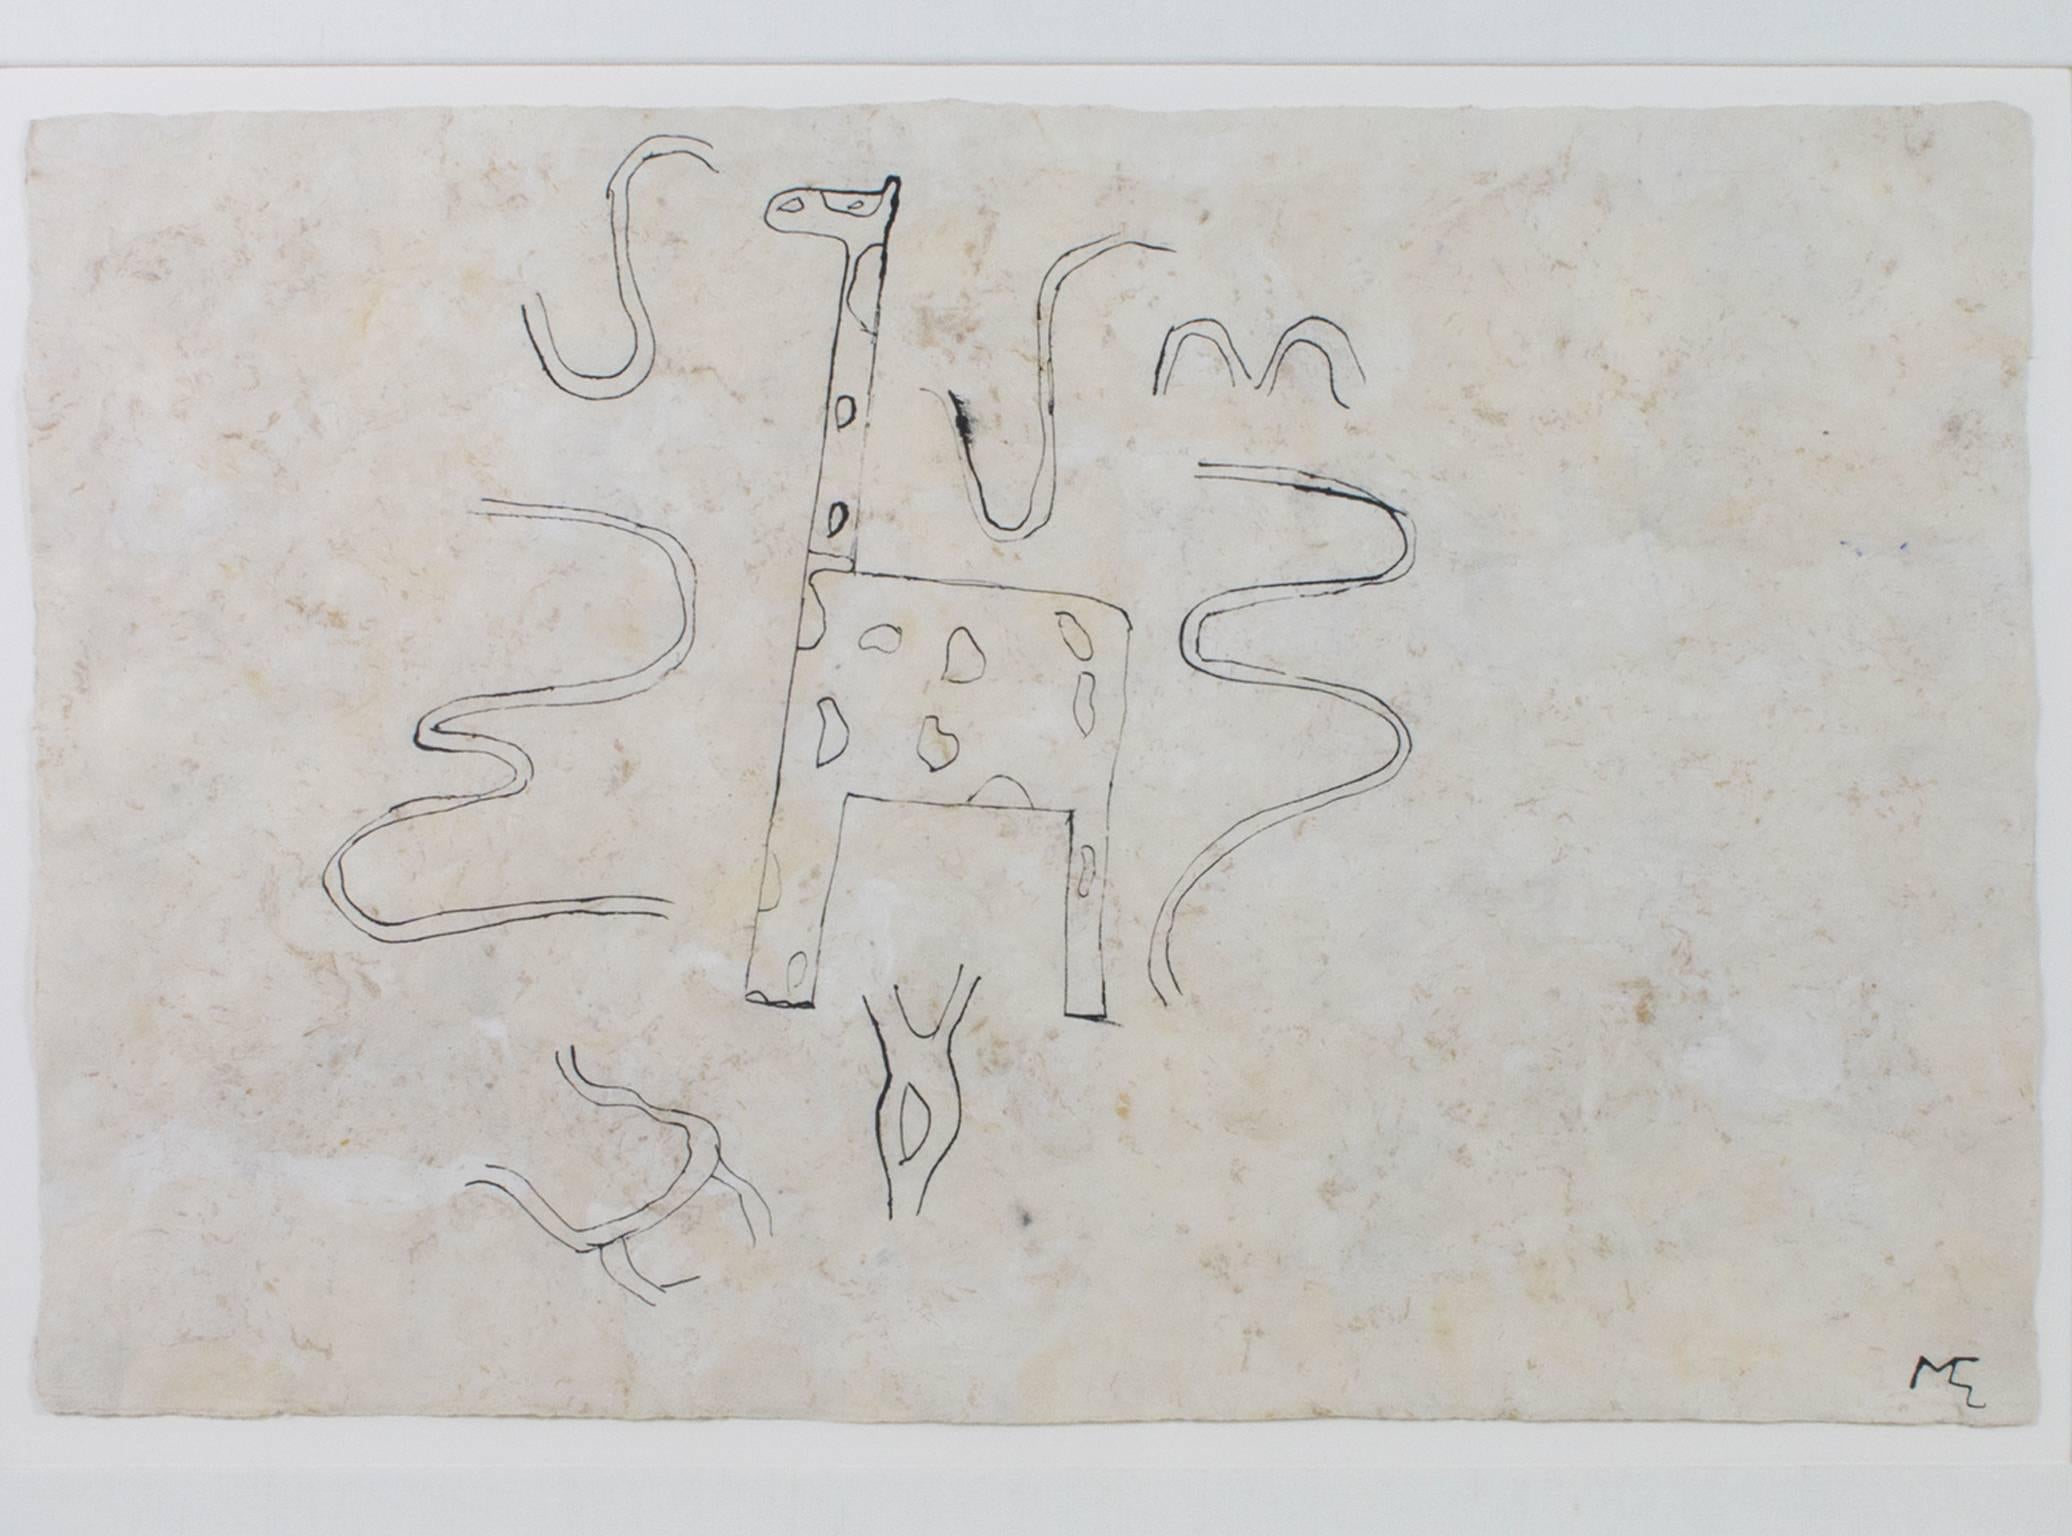 "Giraffe" ist eine Original-Tuschezeichnung auf handgeschöpftem Amate-Papier, die vom Künstler Miguel-Castro Lenero rechts unten signiert wurde. Die Zeichnung stellt eine Giraffe dar, die von schlangenähnlichen Formen umgeben ist. 

15 5/8" x 23